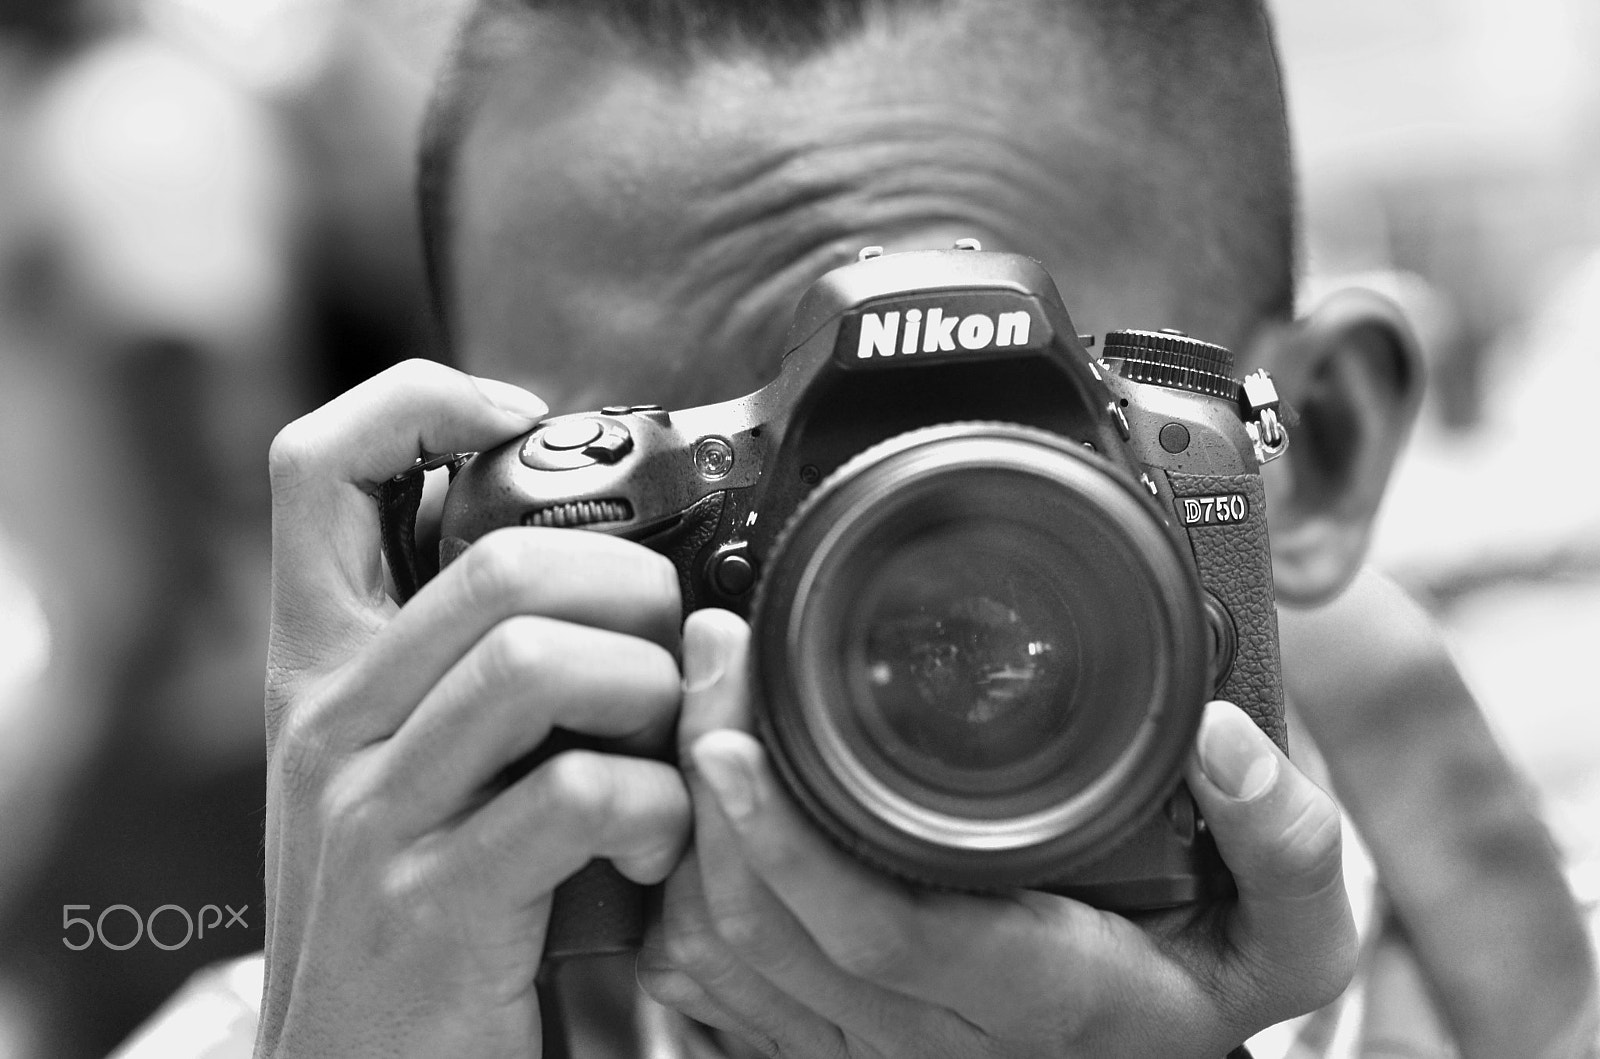 Nikon D7000 + AF Nikkor 85mm f/1.8 sample photo. D750 photography